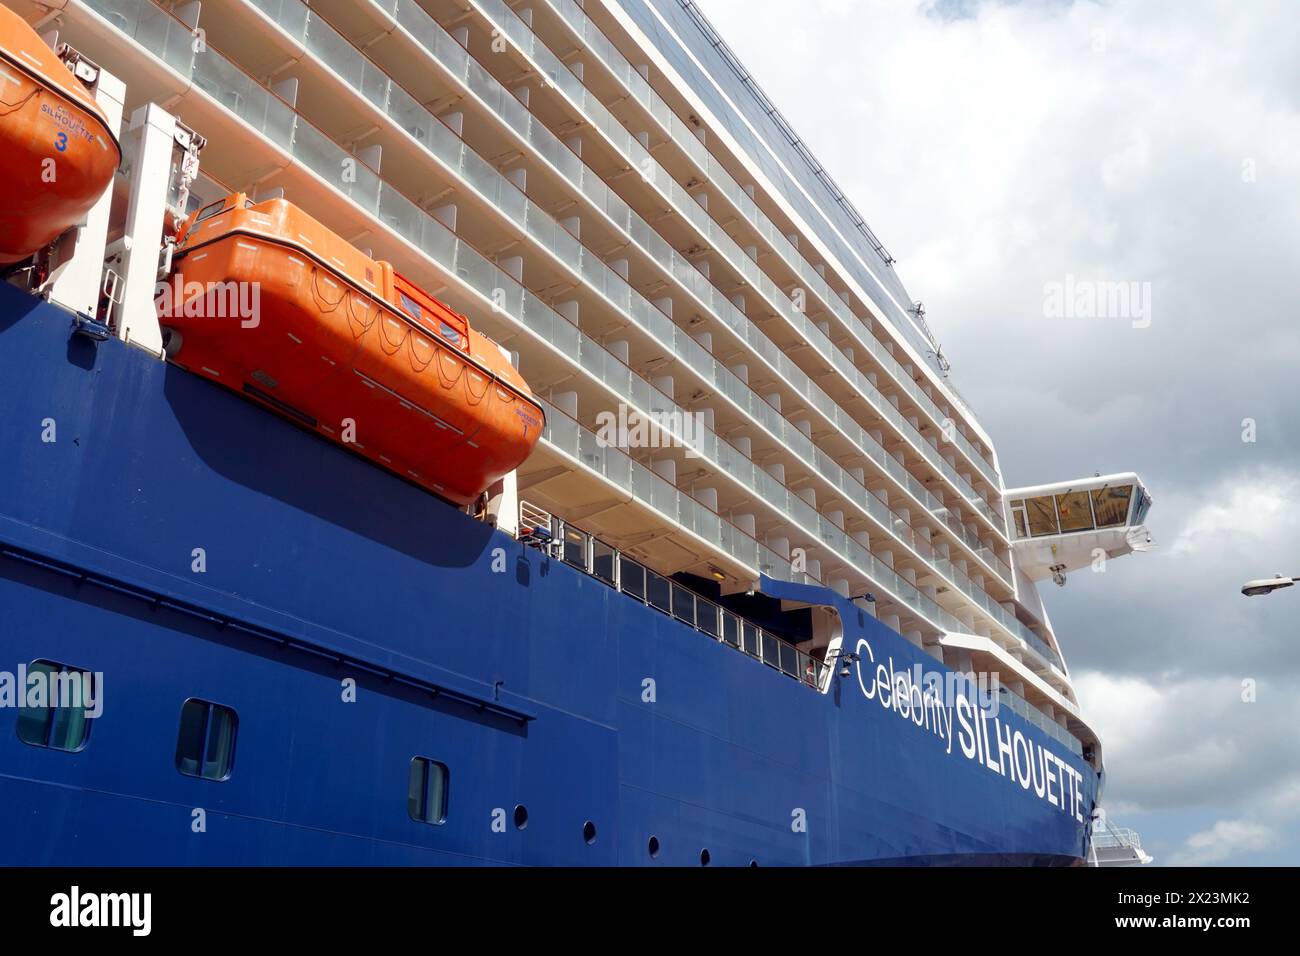 Arc du navire de croisière bleu Celebrity Silhouette amarré du côté tribord dans le terminal à conteneurs de fret dans le port de Castries, Sainte-Lucie. Banque D'Images